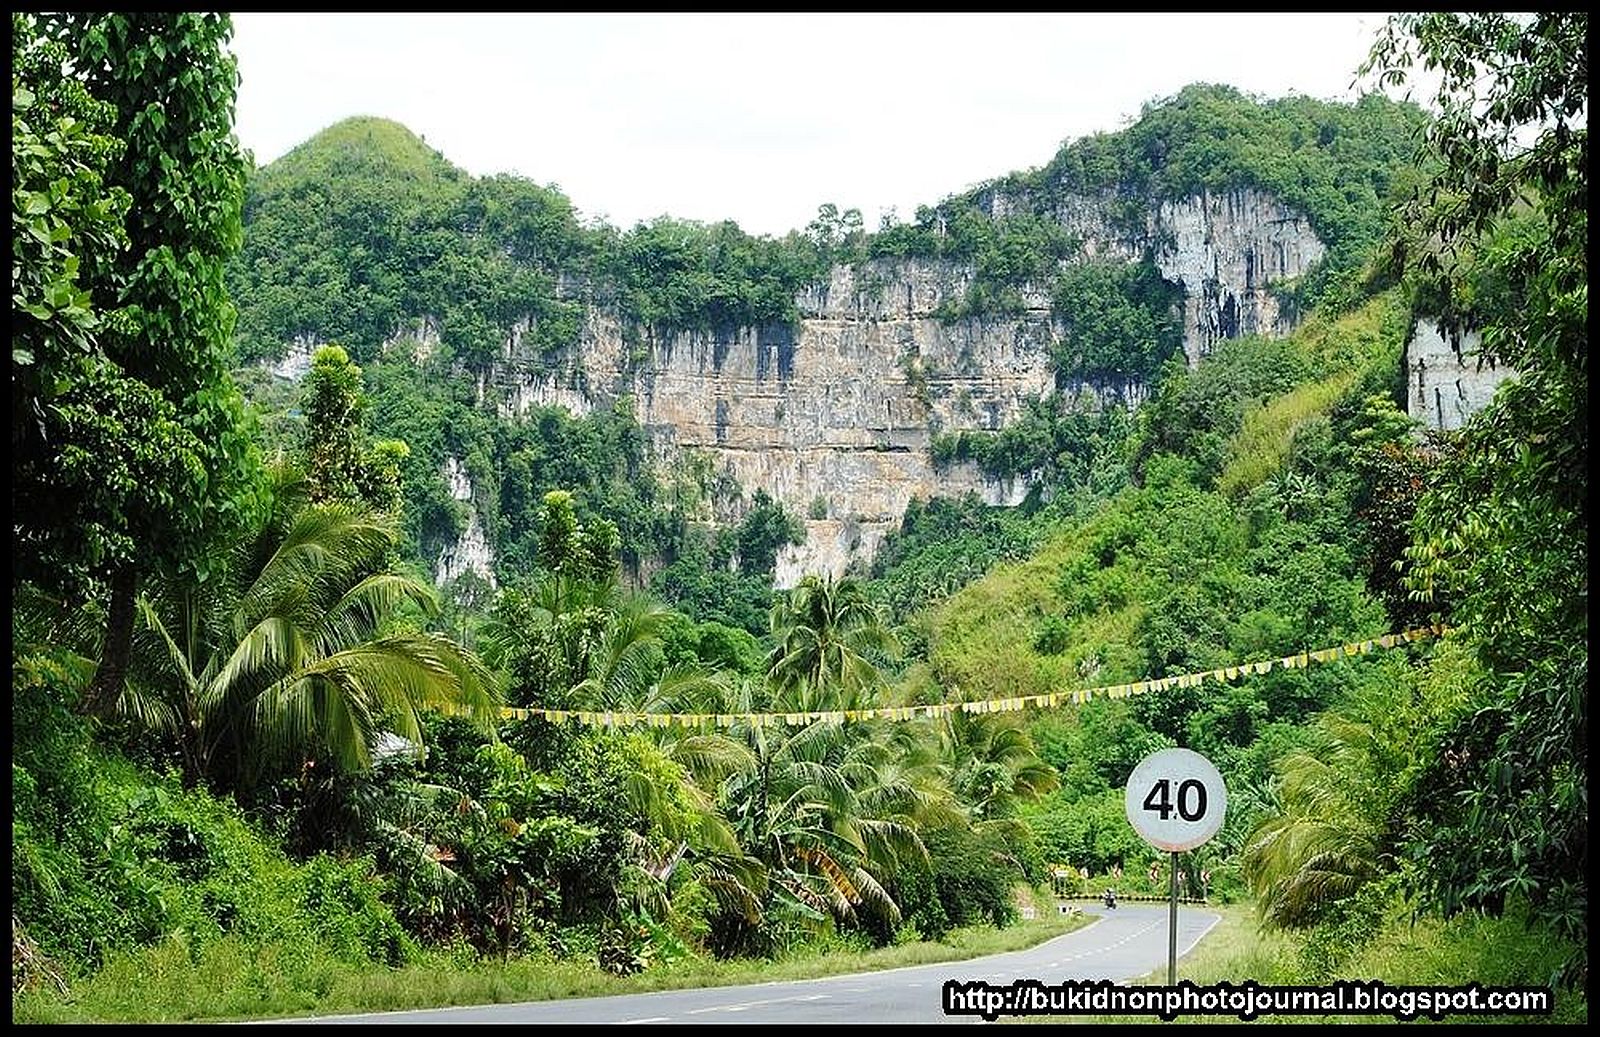 PHILIPPINEN REISEN - ORTE - MINDANAO - BUKIDNON - Touristische Beschreibung für den Ort Quezon